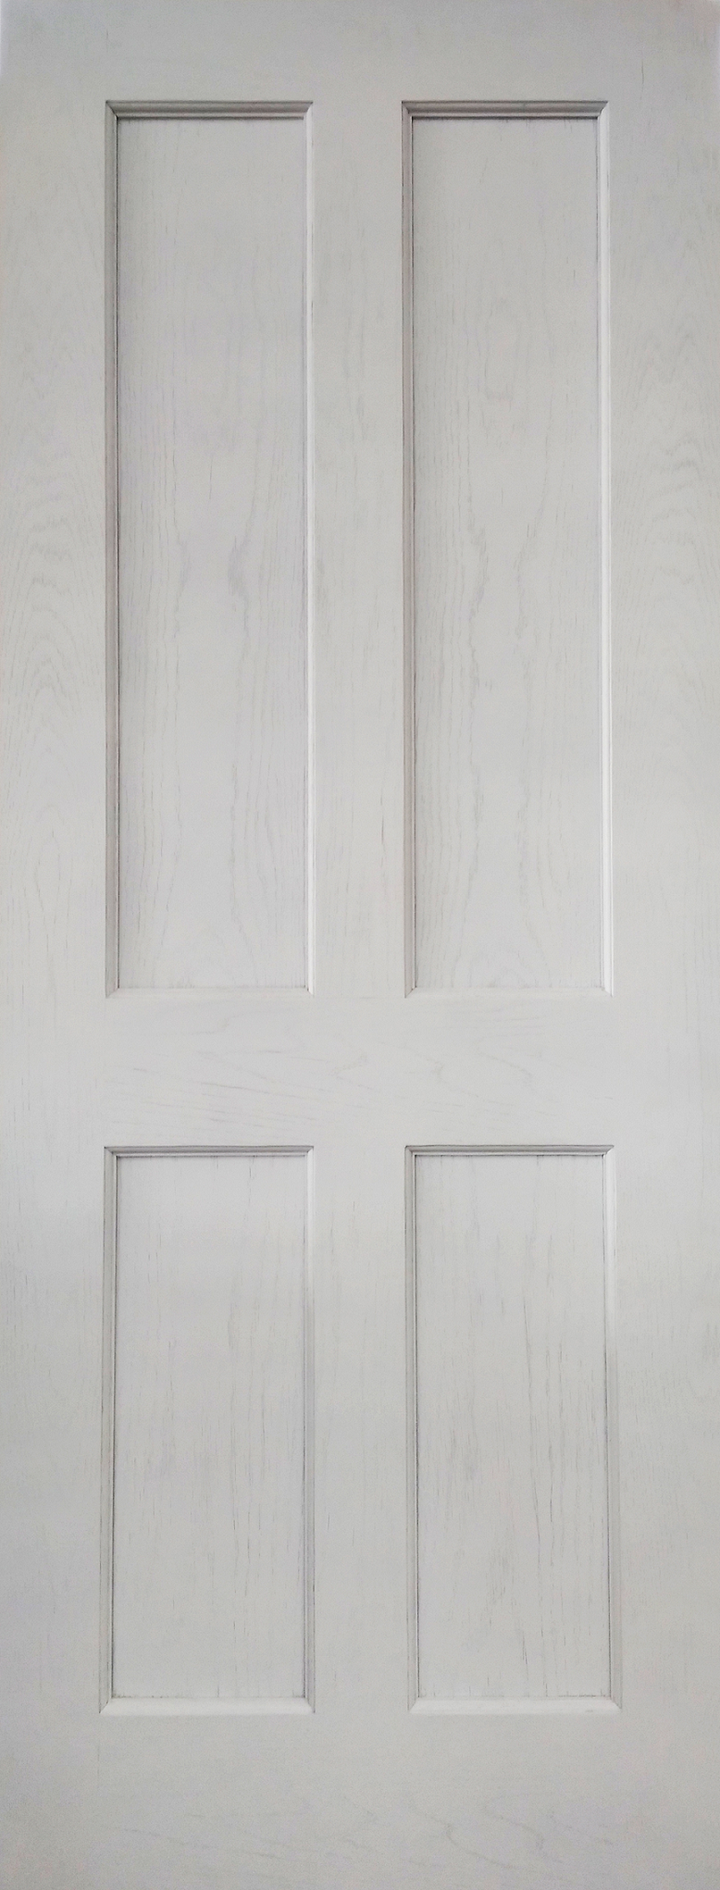 Essex Oak Internal Door White Primed 